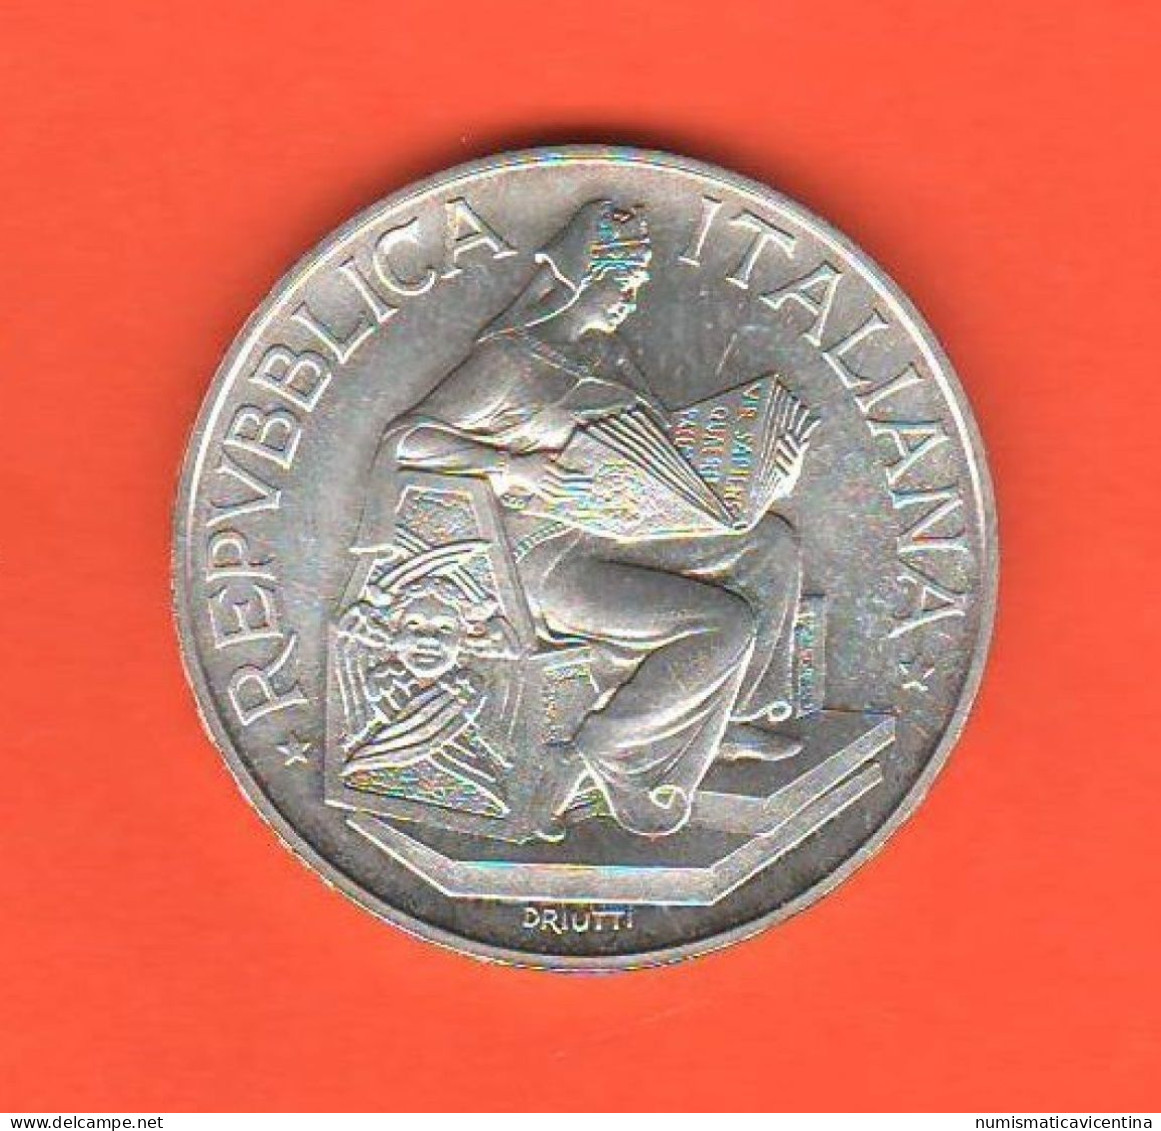 Italia 500 Lire 1993 X 650th Université Pisa Università University Italie Italy Silver Coin  C 9 - Commemorative